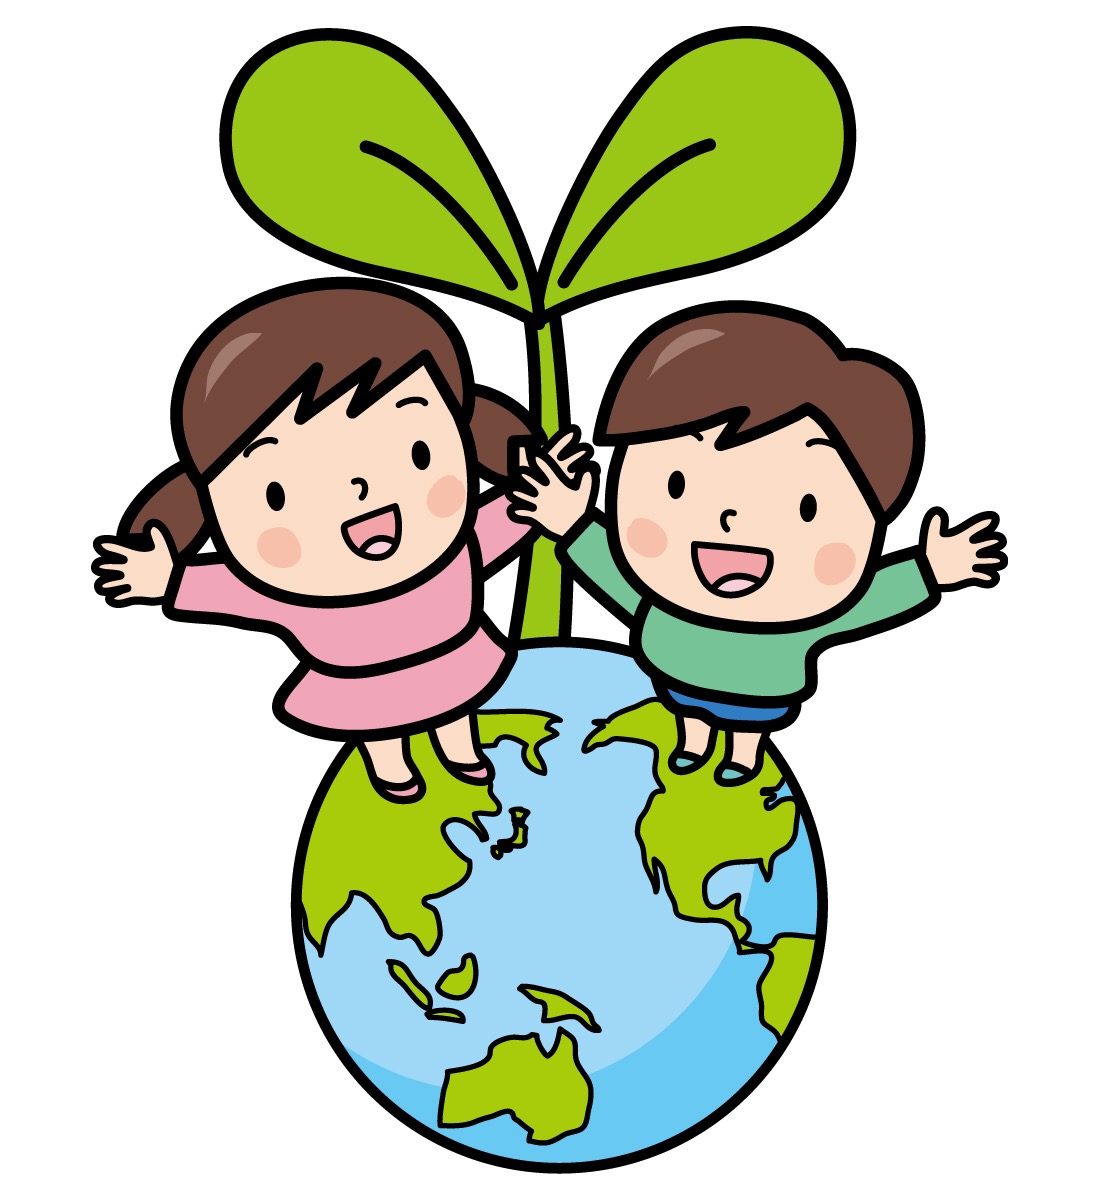 1月27日は草津市役所で「草津市こども環境会議」が開催！みんなで考えよう、草津のあした！参加無料♪